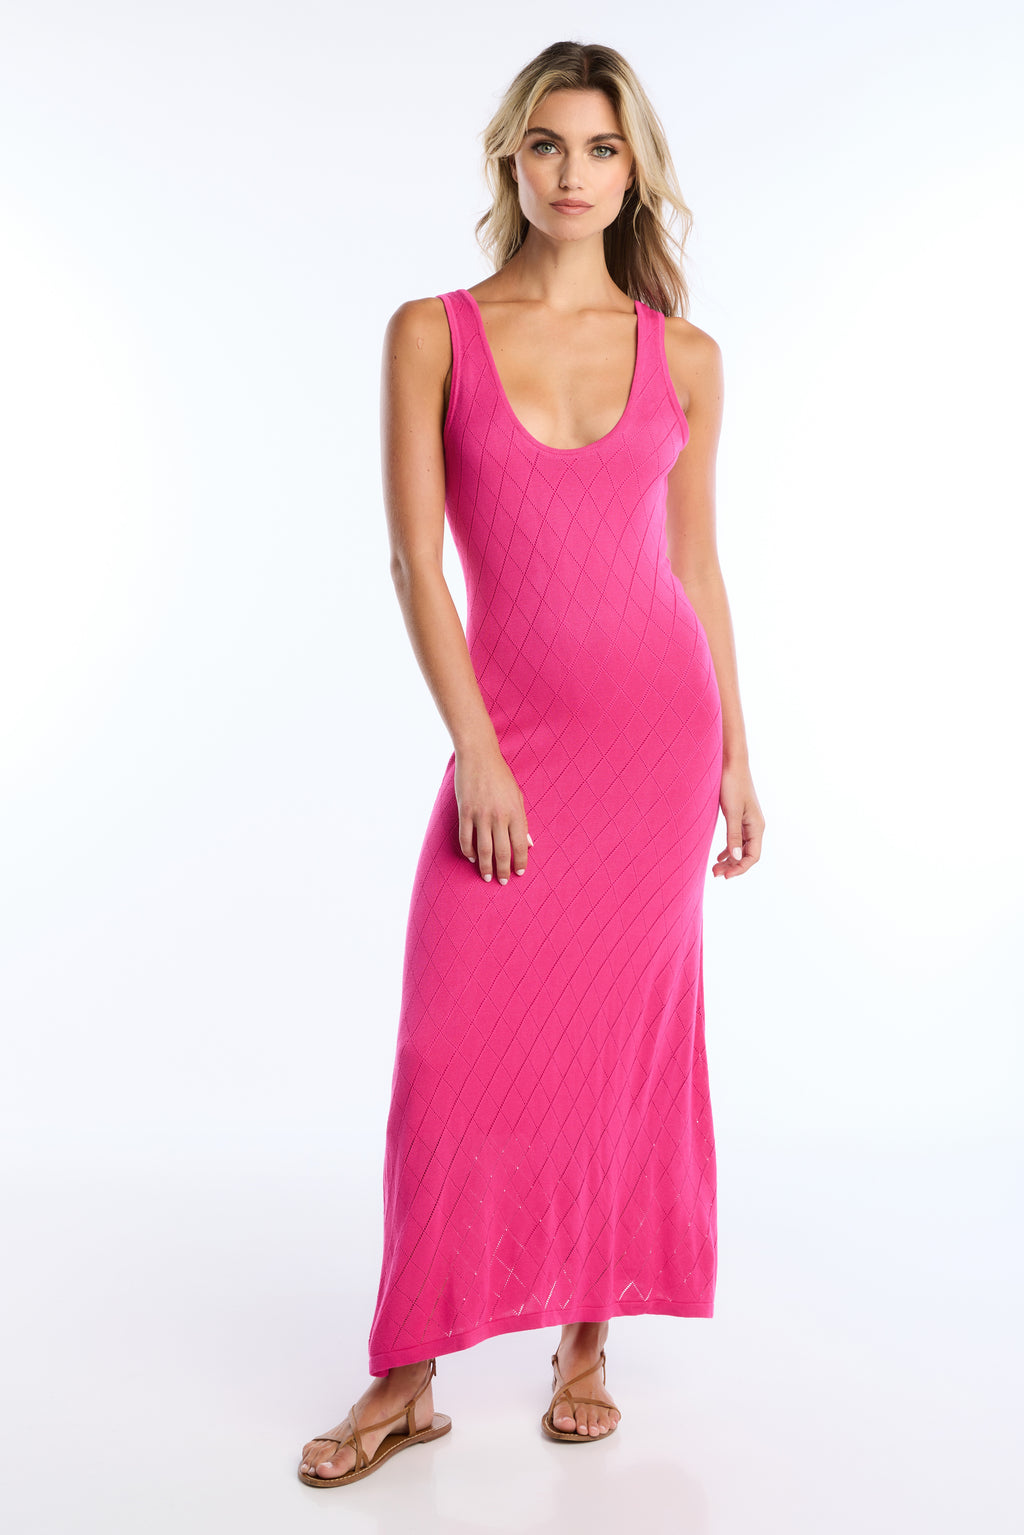 Allison Reid Crochet Dress in Hot Pink